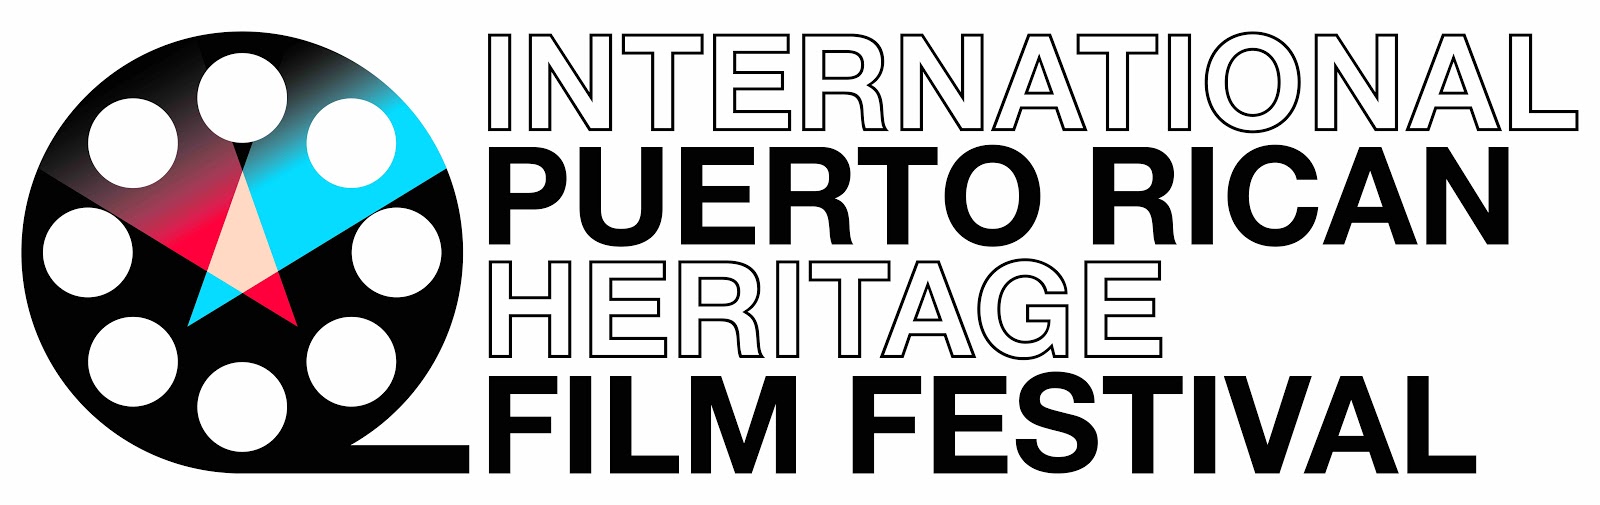 국제 푸에르토리코 헤리티지 영화제(International Puerto Rican Heritage Film Festival)는 필름 릴 그래픽 옆에 굵은 검은색 글자로 쓰여 있습니다.